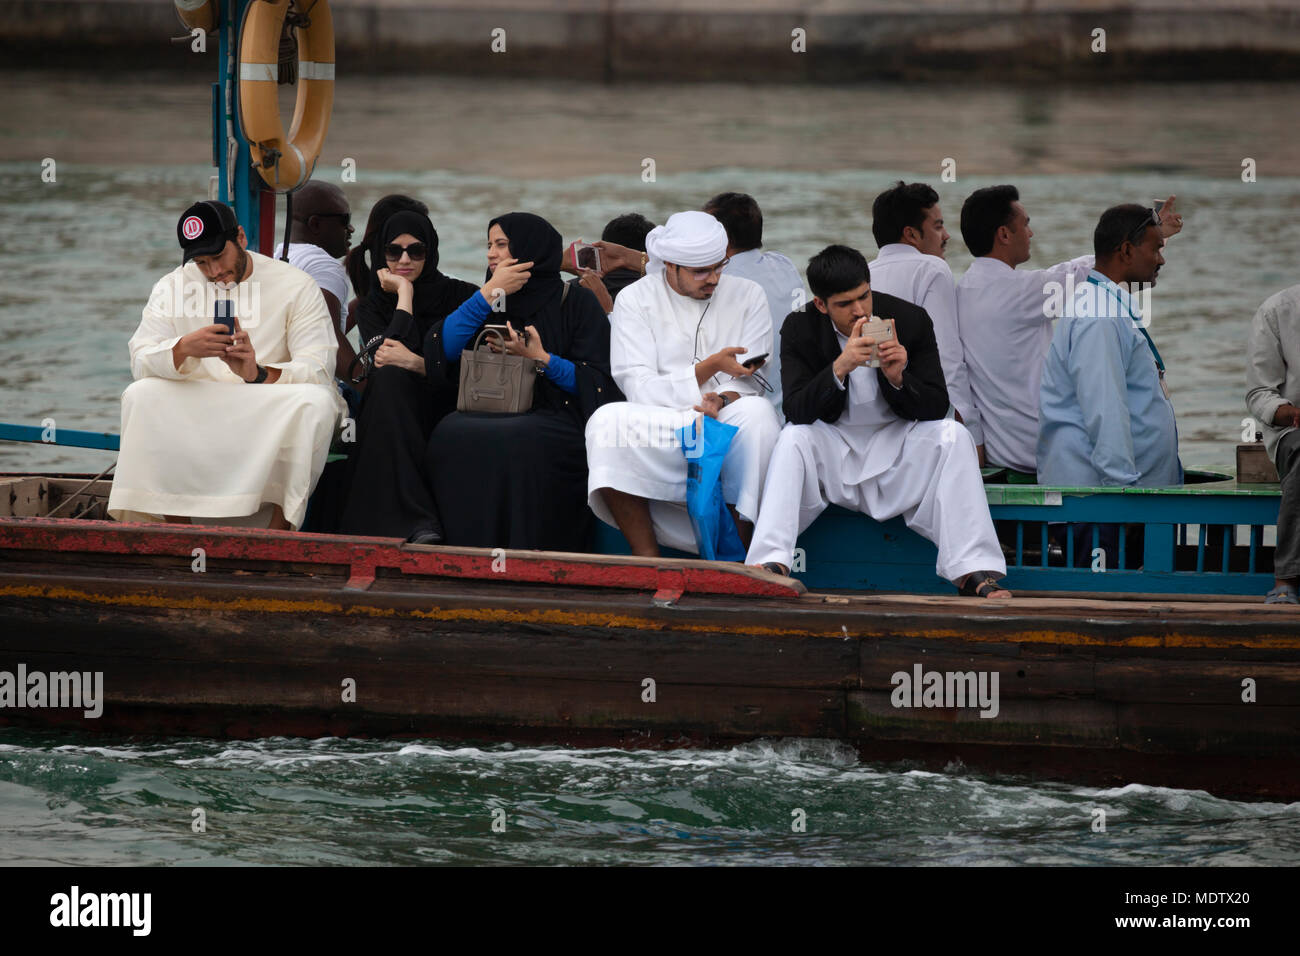 Local people crossing the Dubai Creek on an abra, Dubai, United Arab Emirates, Middle East Stock Photo